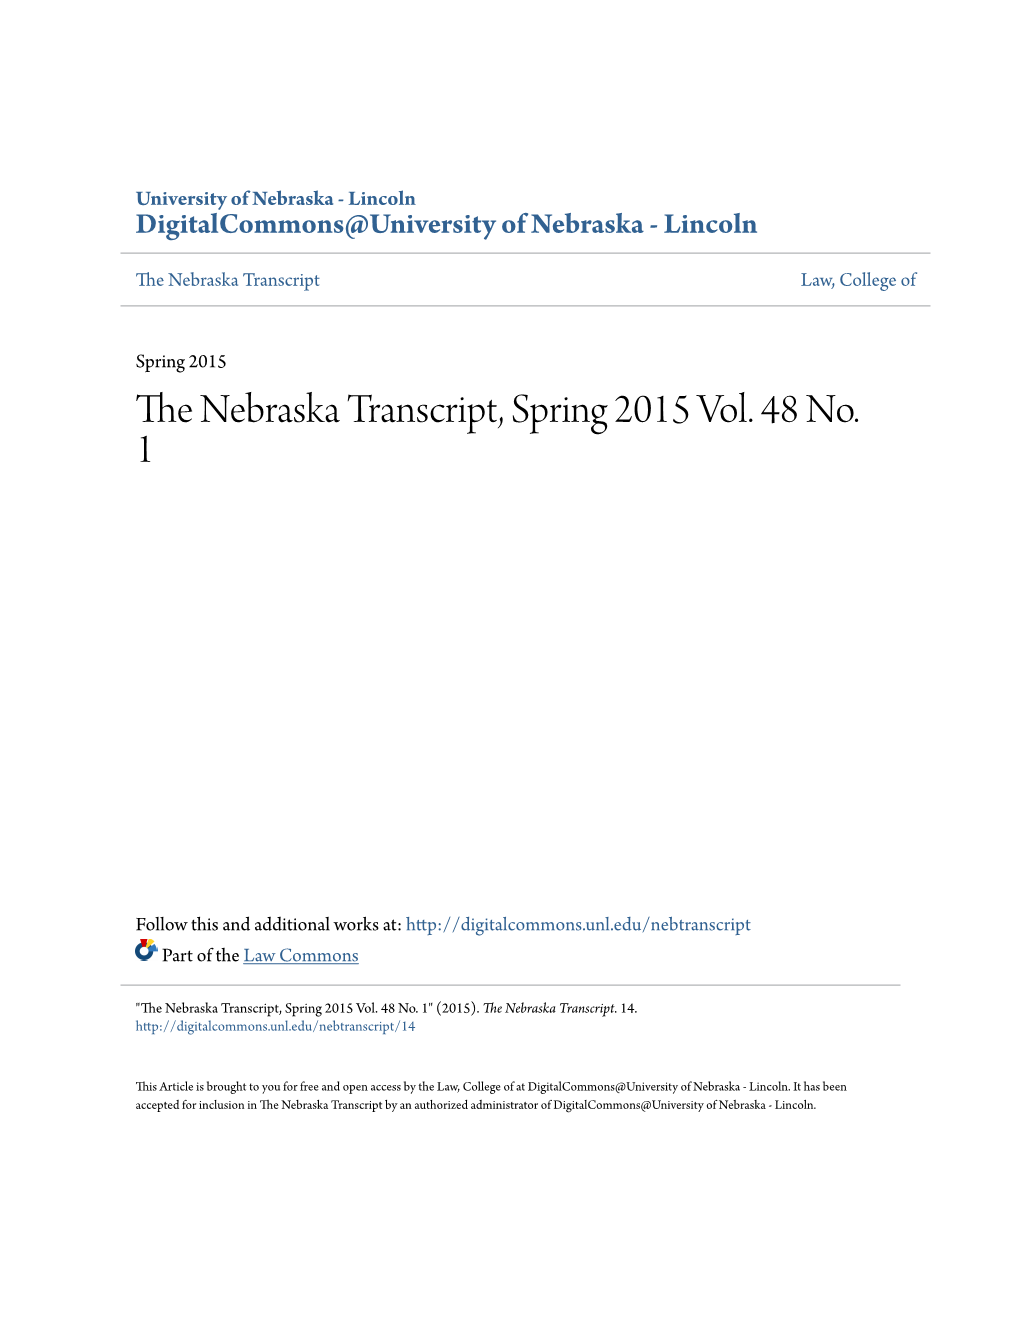 The Nebraska Transcript, Spring 2015 Vol. 48 No. 1